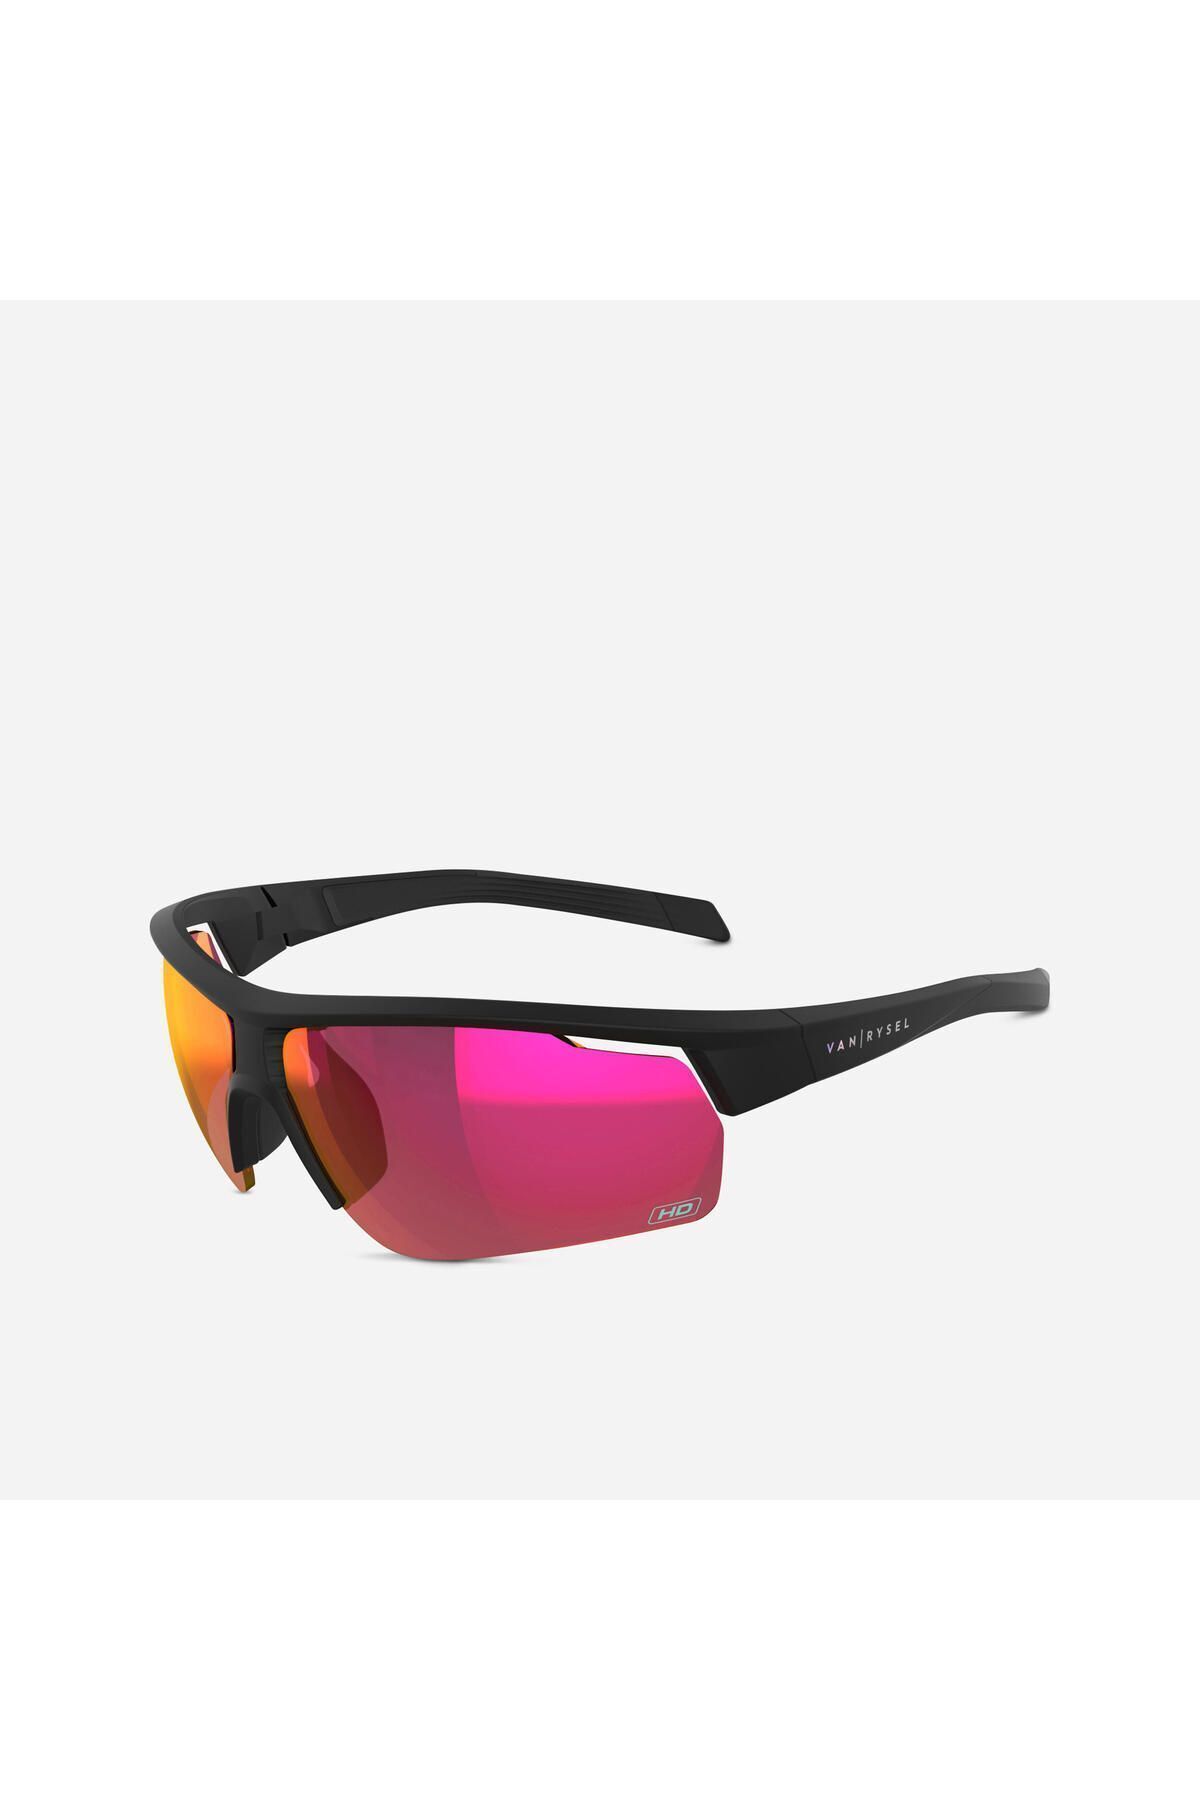 Decathlon Güneş Gözlüğü - Yetişkin - Kategori 3 - Siyah - Roadr 500 Hıgh Defınıtıon